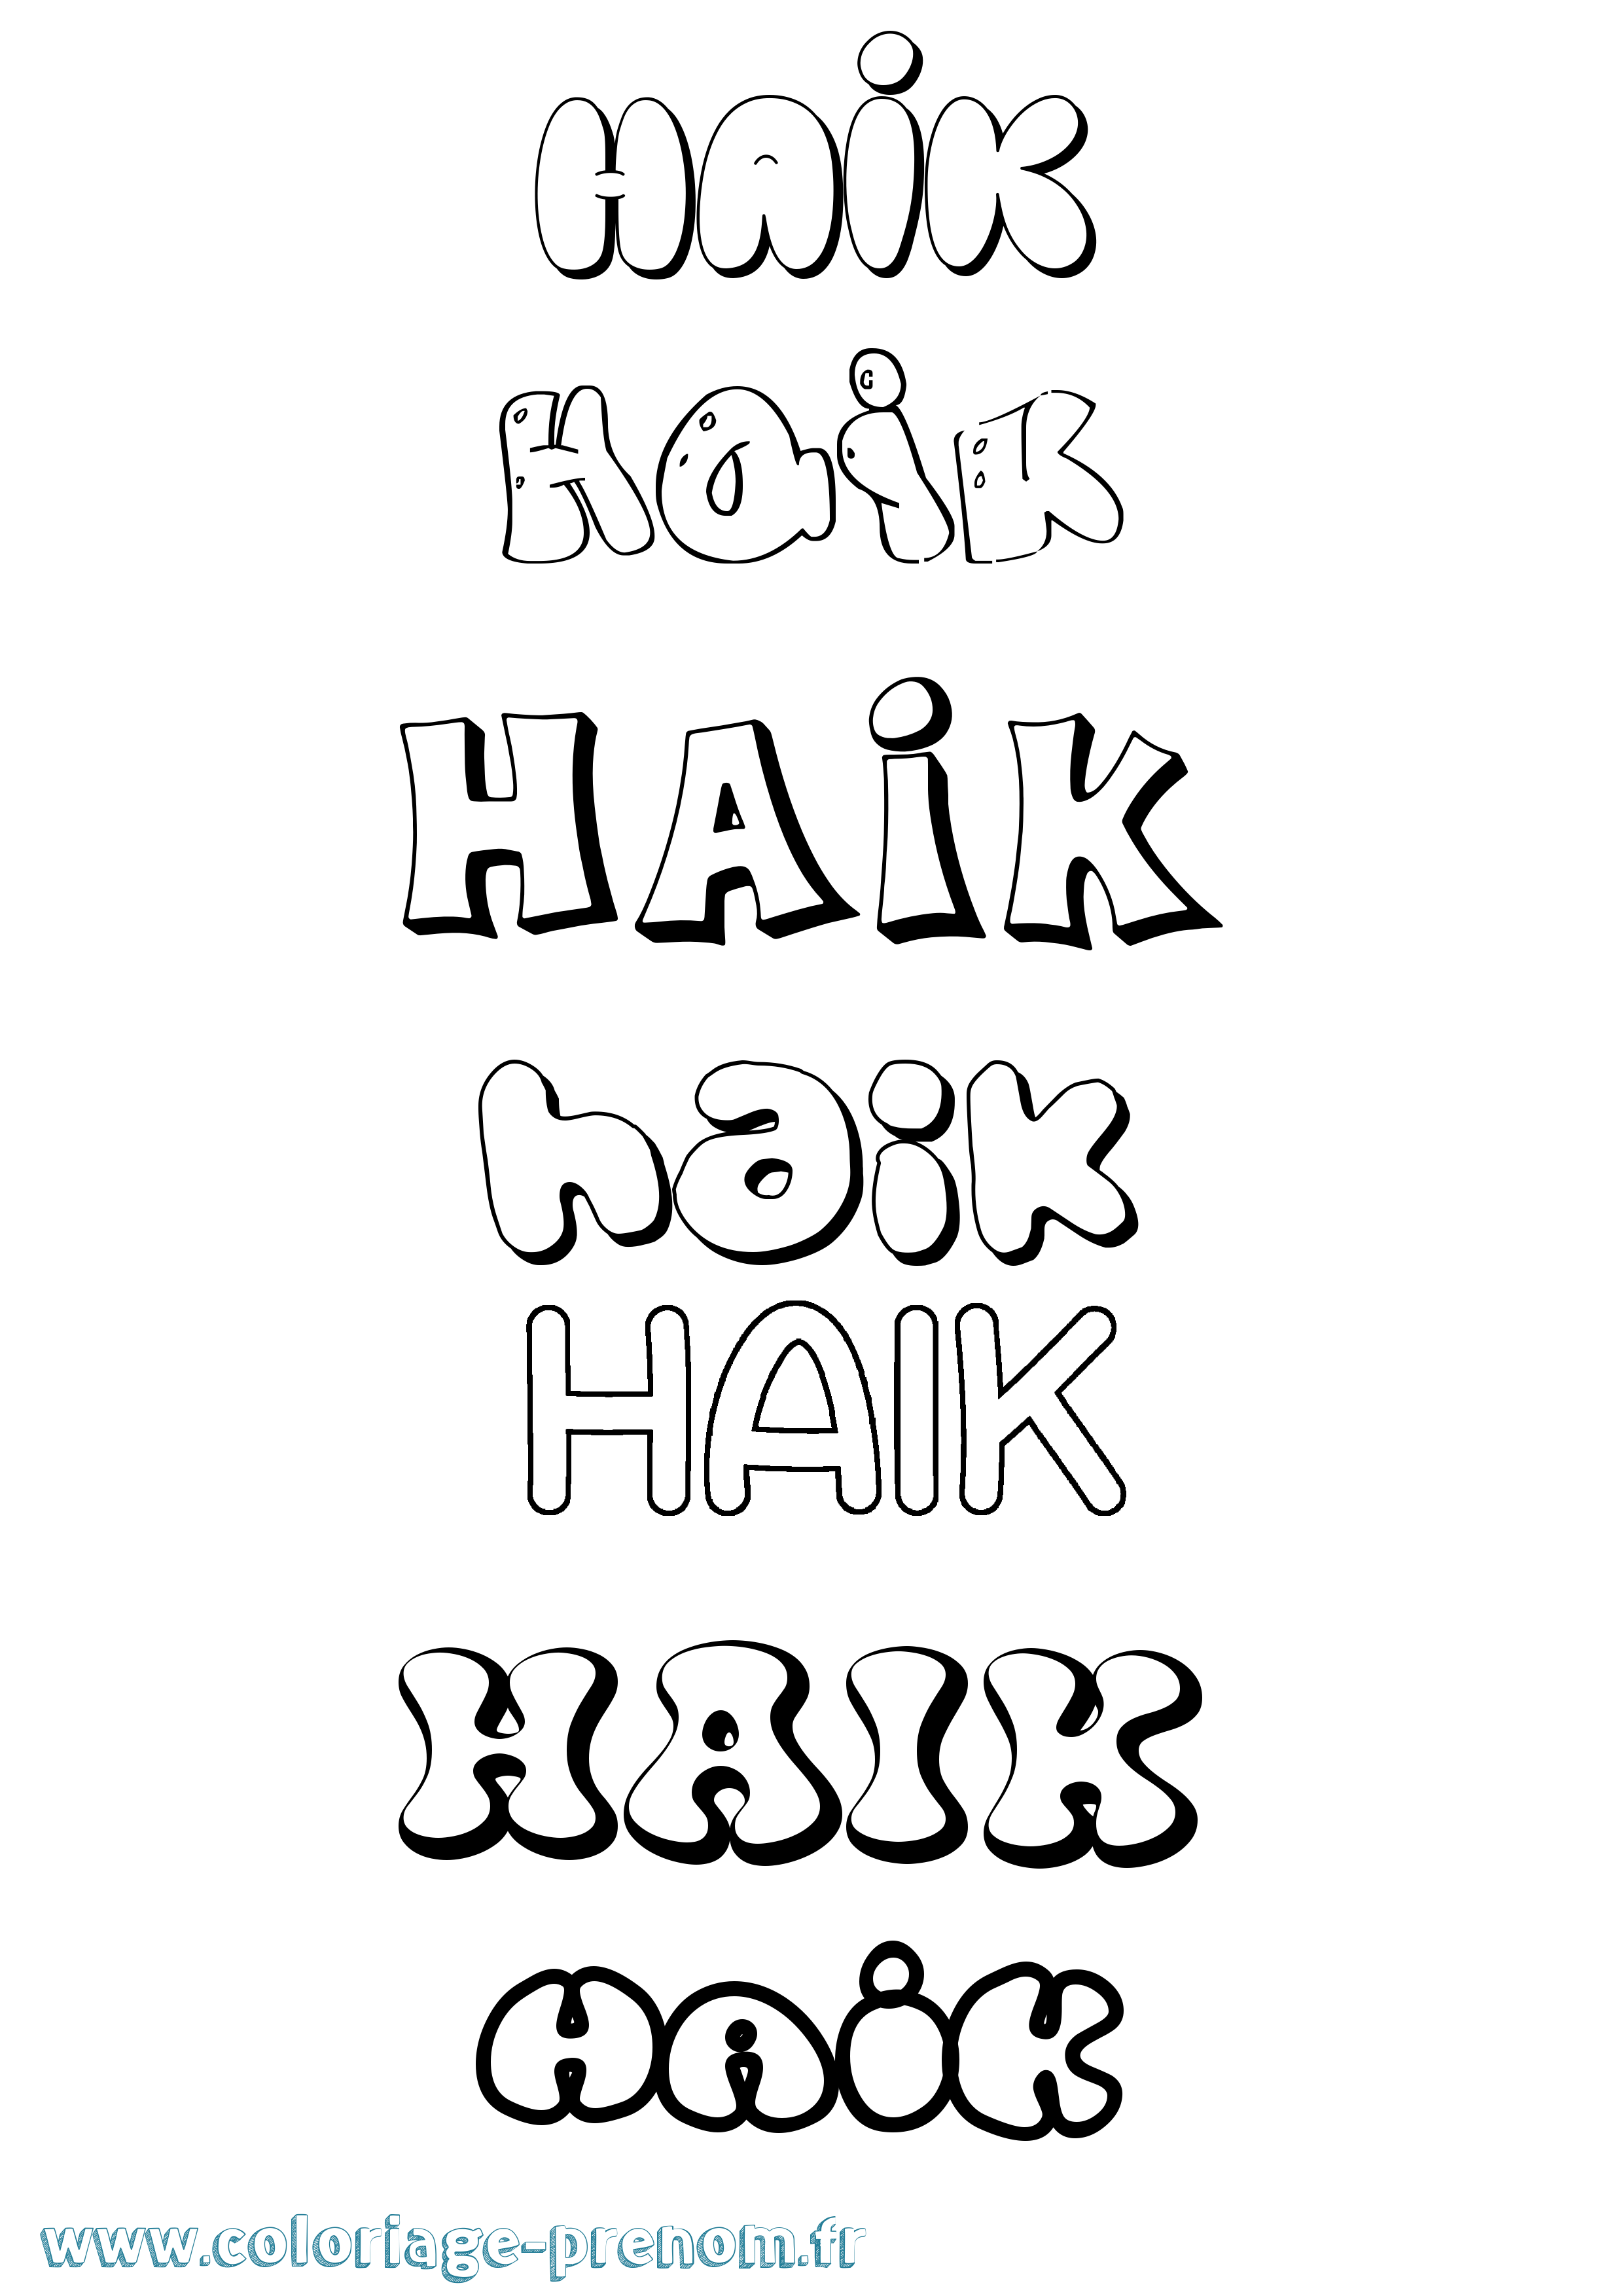 Coloriage prénom Haik Bubble